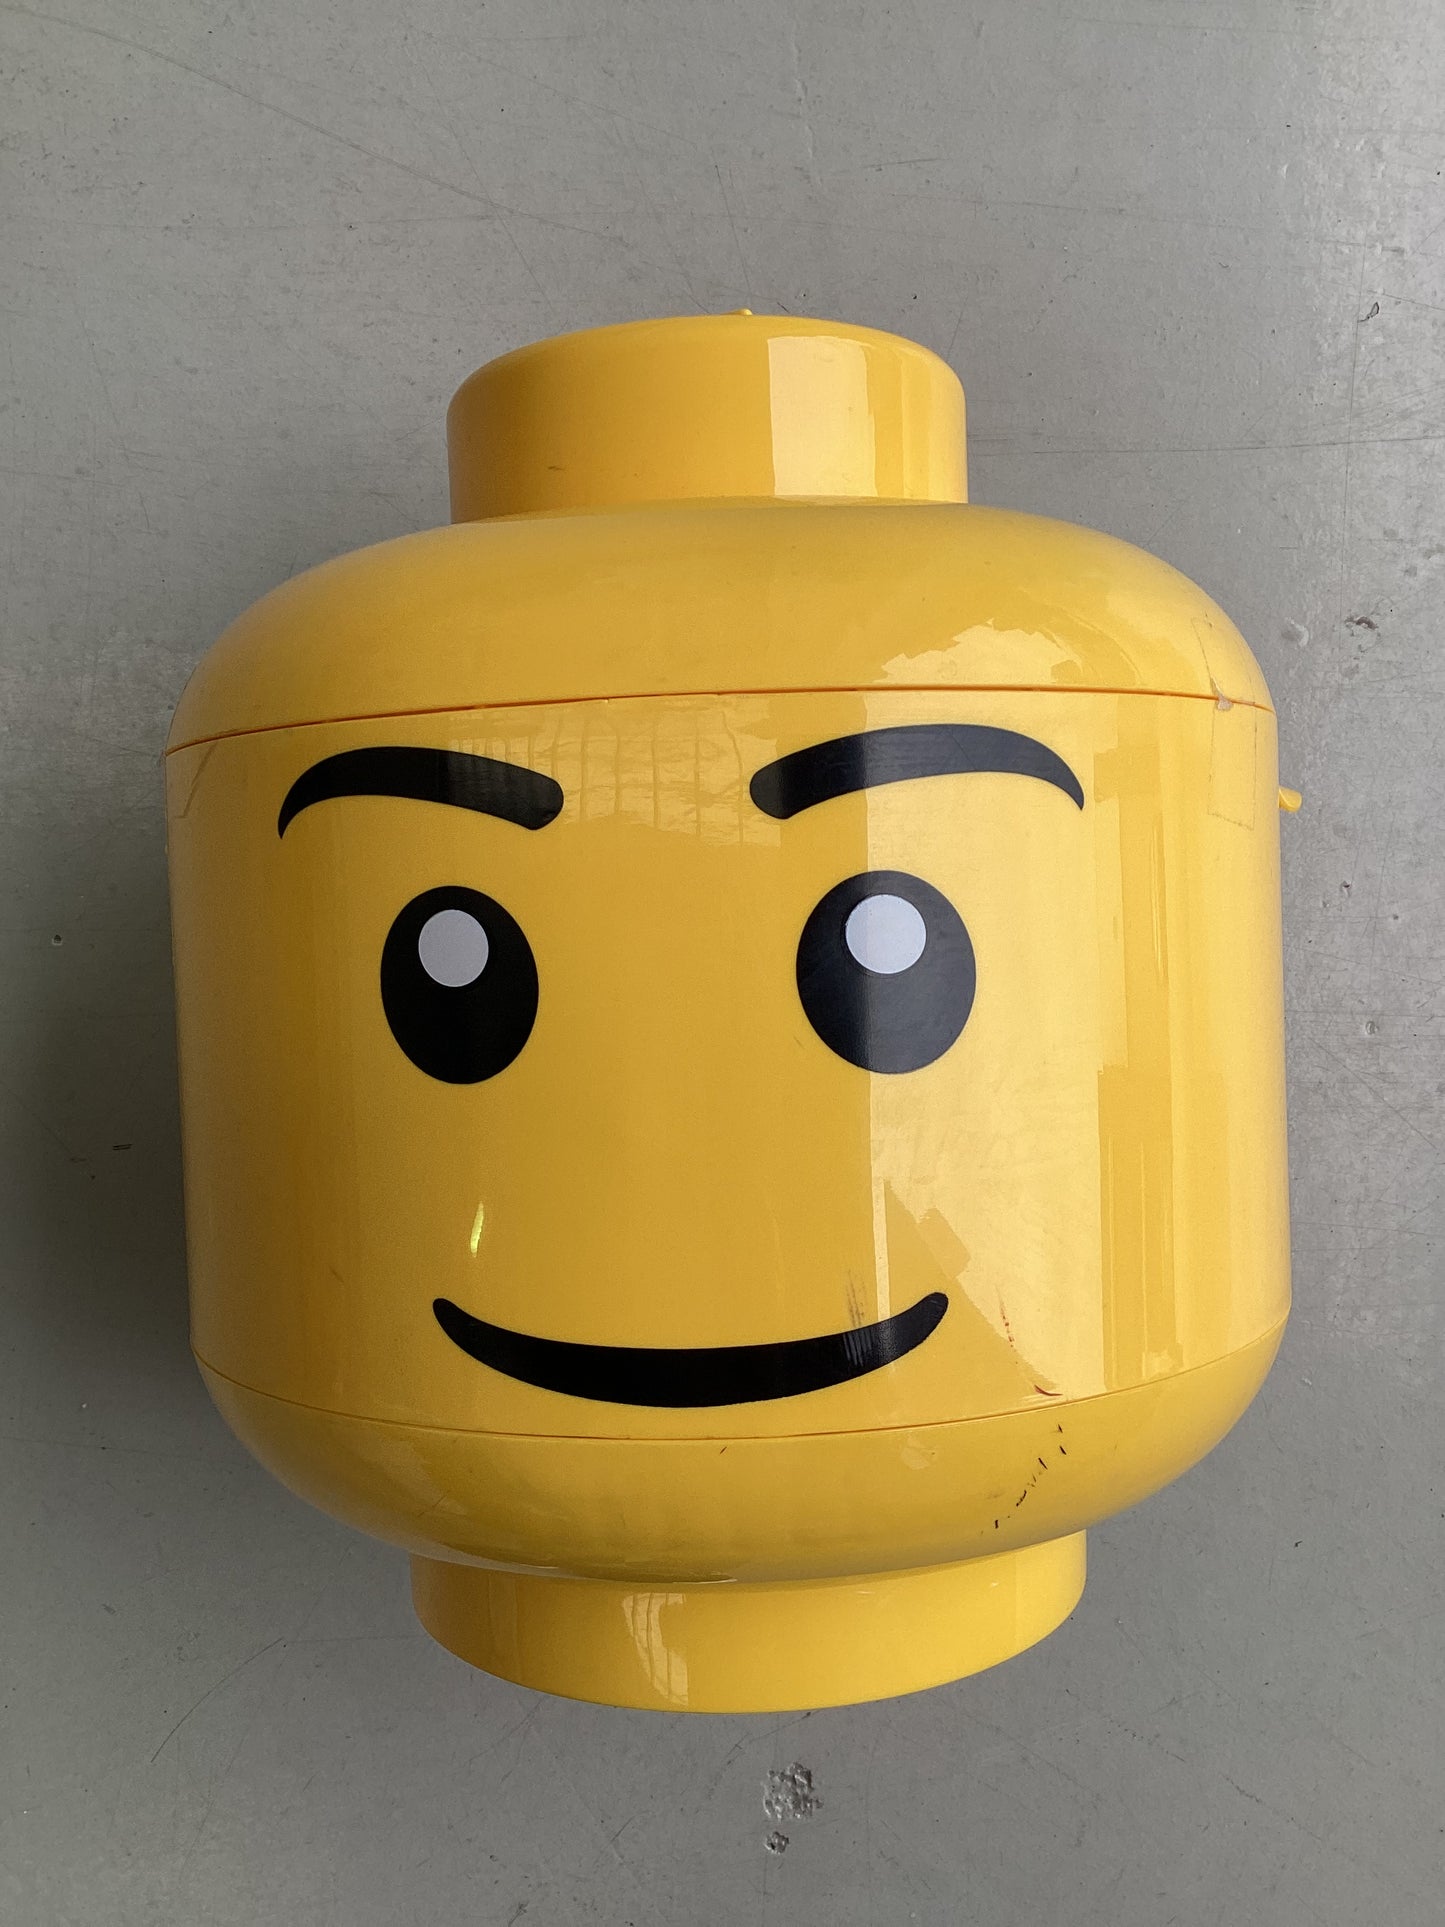 LEGO Storage Head - Kids will love this storage head